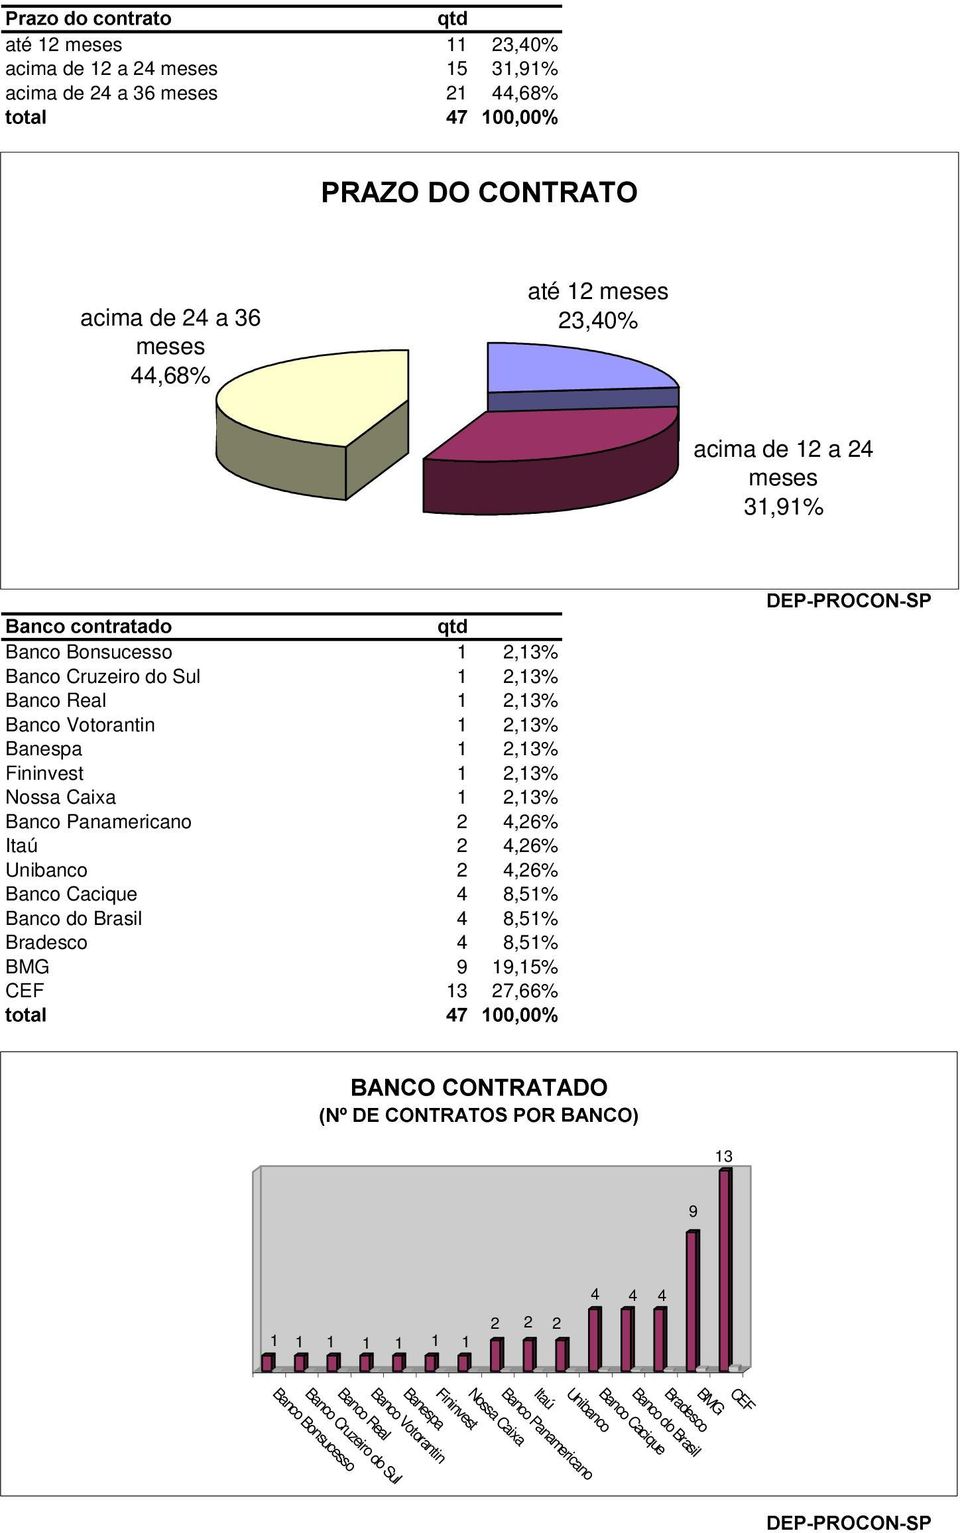 1 )1. & * Banco Bonsucesso 1 2,13% Banco Cruzeiro do Sul 1 2,13% Banco Real 1 2,13% Banco Votorantin 1 2,13% Banespa 1 2,13% Fininvest 1 2,13% Nossa Caixa 1 2,13% Banco Panamericano 2 4,26%